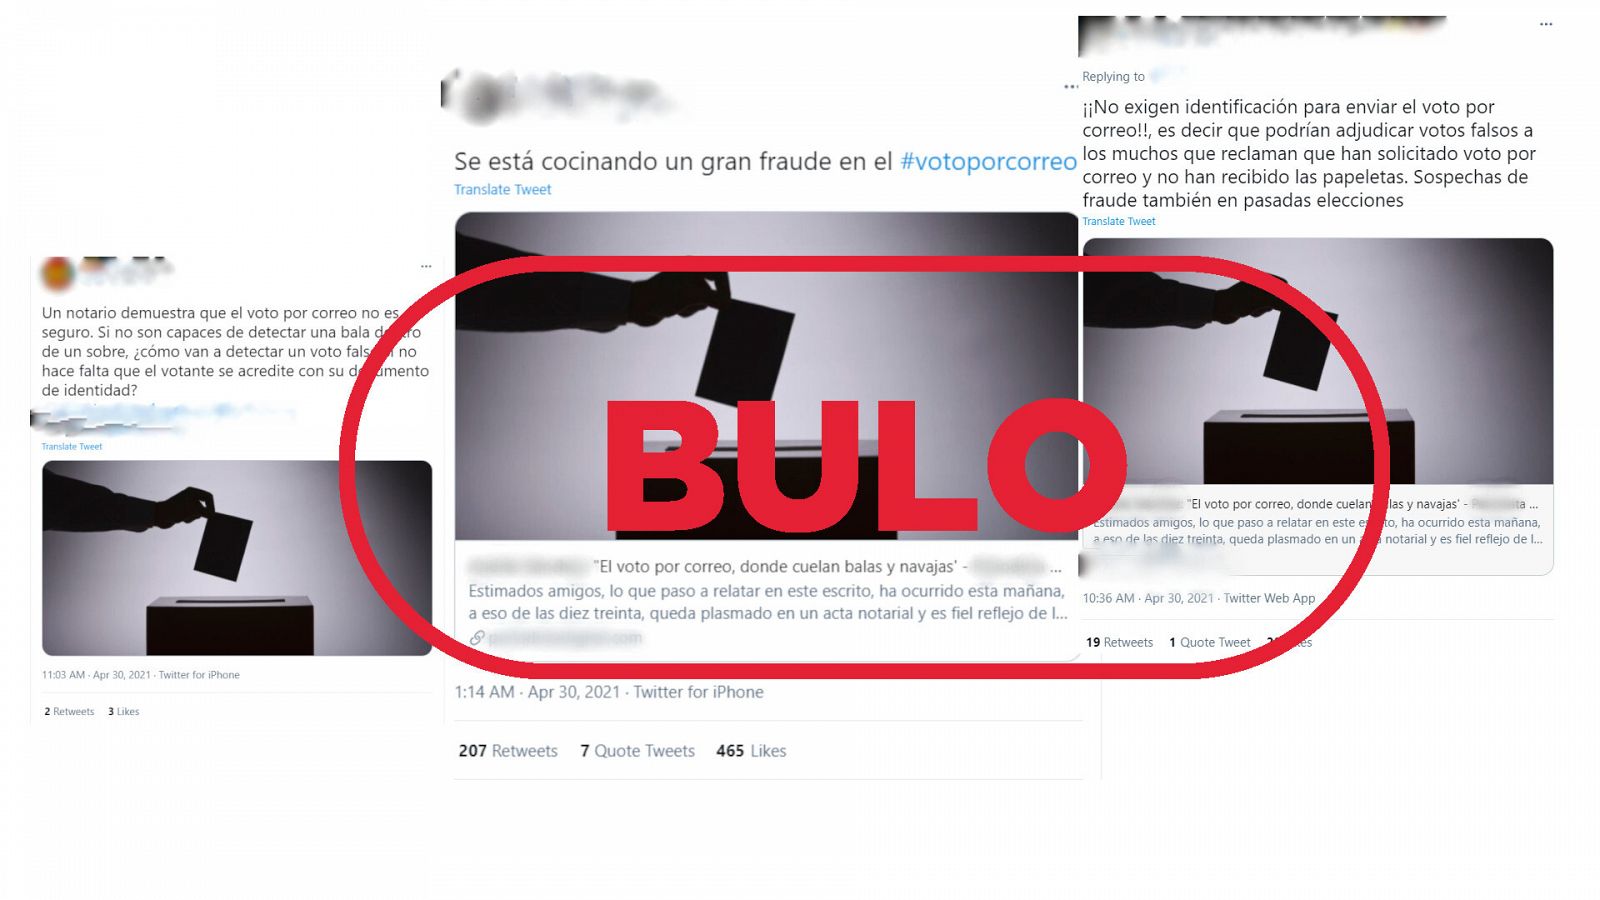 Imagen de tres tuits que reproducen el bulo de que se puede votar por correo sin presentar el DNI con el sello bulo en rojo de VerificaRTVE